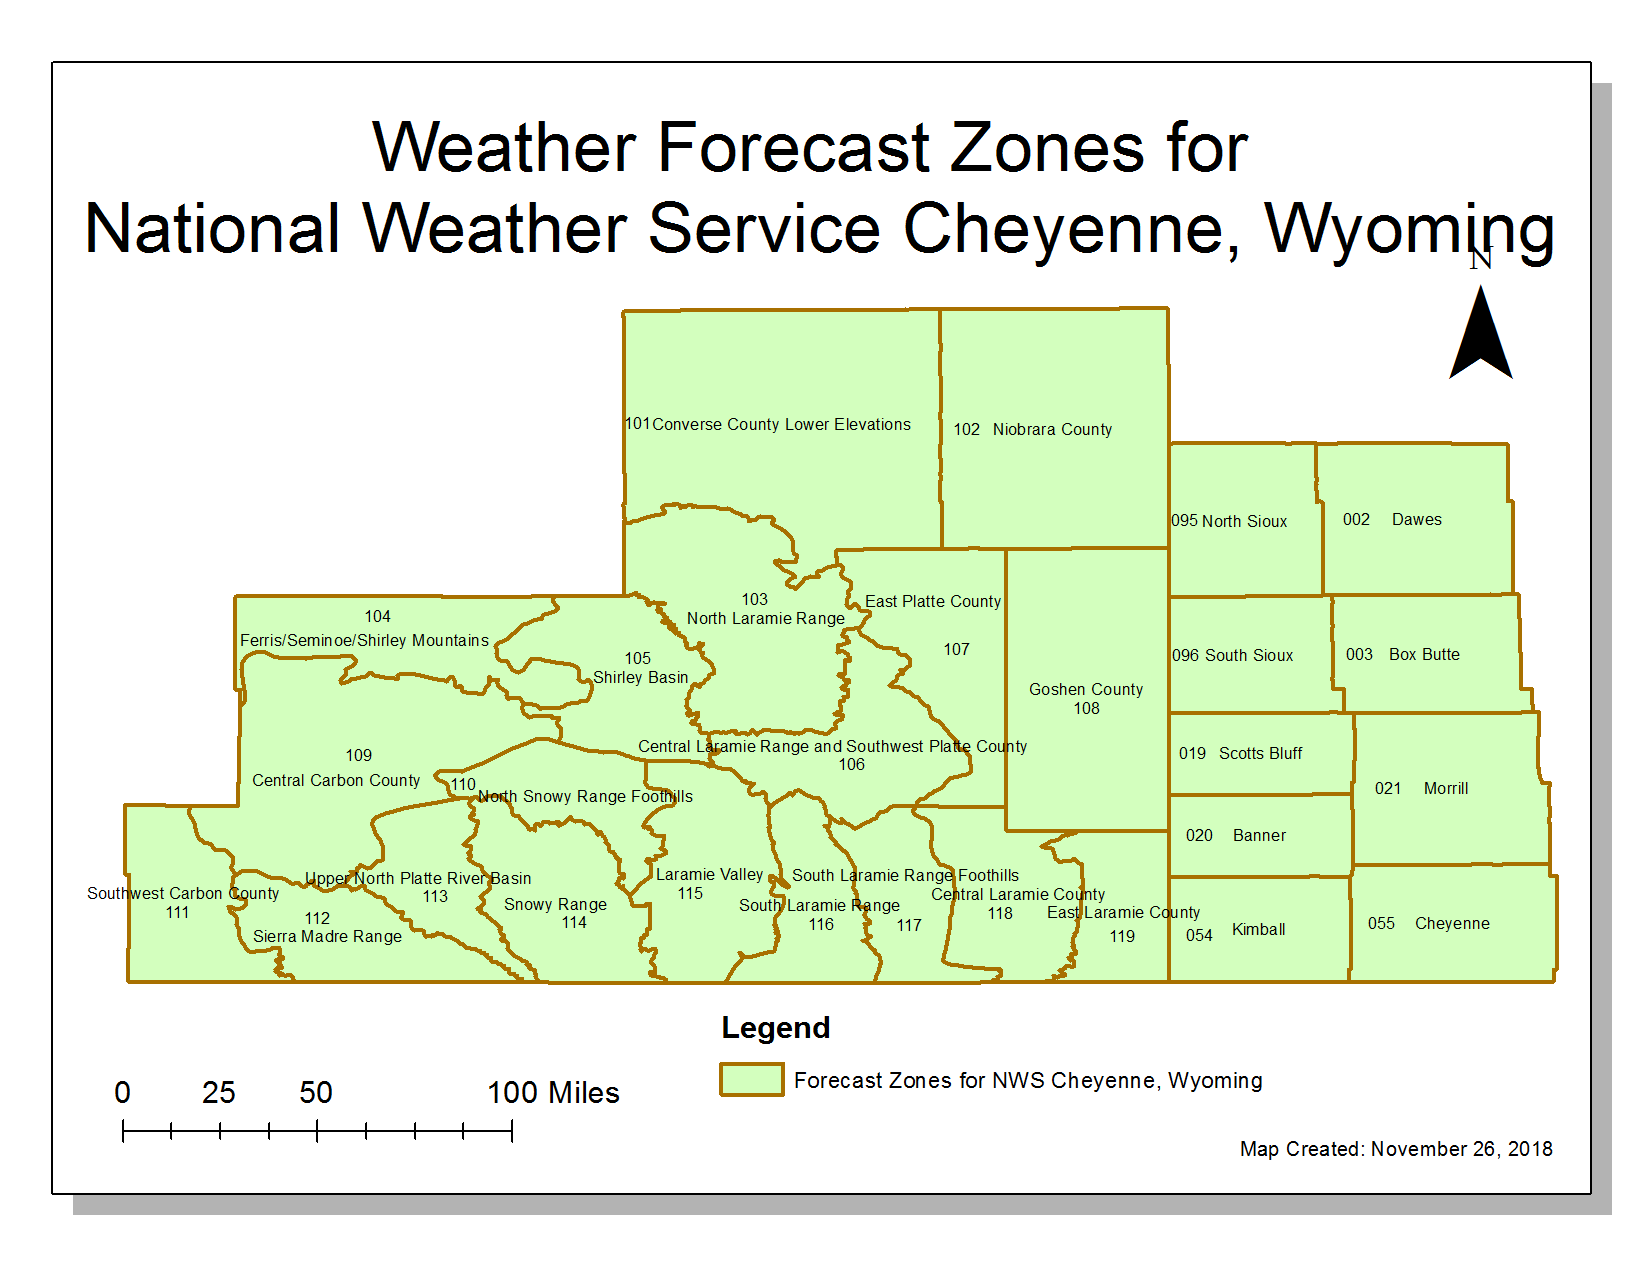 On the Wyoming Side of Forecast Zones: WYZ101 (Converse County Lower Elevations), WYZ102 (Niobrara County), WYZ103 (North Laramie Range), WYZ104 (Ferris/Seminoe/Shirley Mountains), WYZ105 (Shirley Basin), WYZ106 (Central Laramie Range and Southwest Platte County), WYZ107 (East Platte County), WYZ108 (Goshen County), WYZ109 (Central Carbon County), WYZ110 (North Snowy Range Foothills), WYZ111 (Southwest Carbon County), WYZ112 (Sierra Madre Range), WYZ113 (Upper North Platte River Basin), WYZ114 (Snowy Range), WYZ115 (Laramie Valley), WYZ116 (South Laramie Range), WYZ117 (South Laramie Range Foothills), WYZ118 (Central Laramie County), and WYZ119 (East Laramie County).	